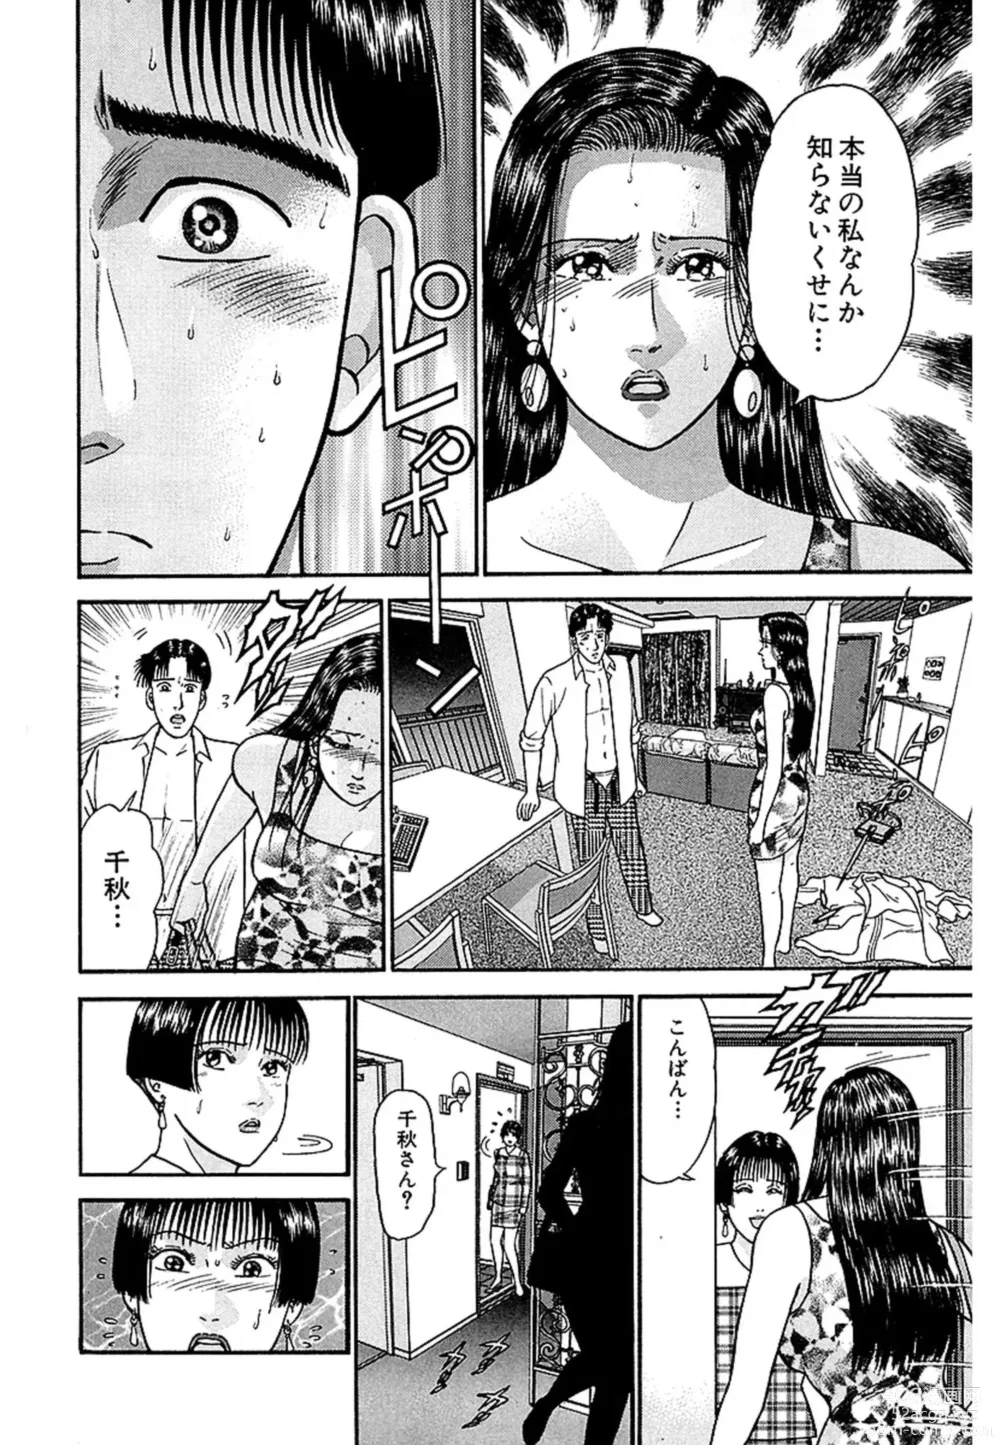 Page 198 of manga Women － Wimen － Shinsōban 1